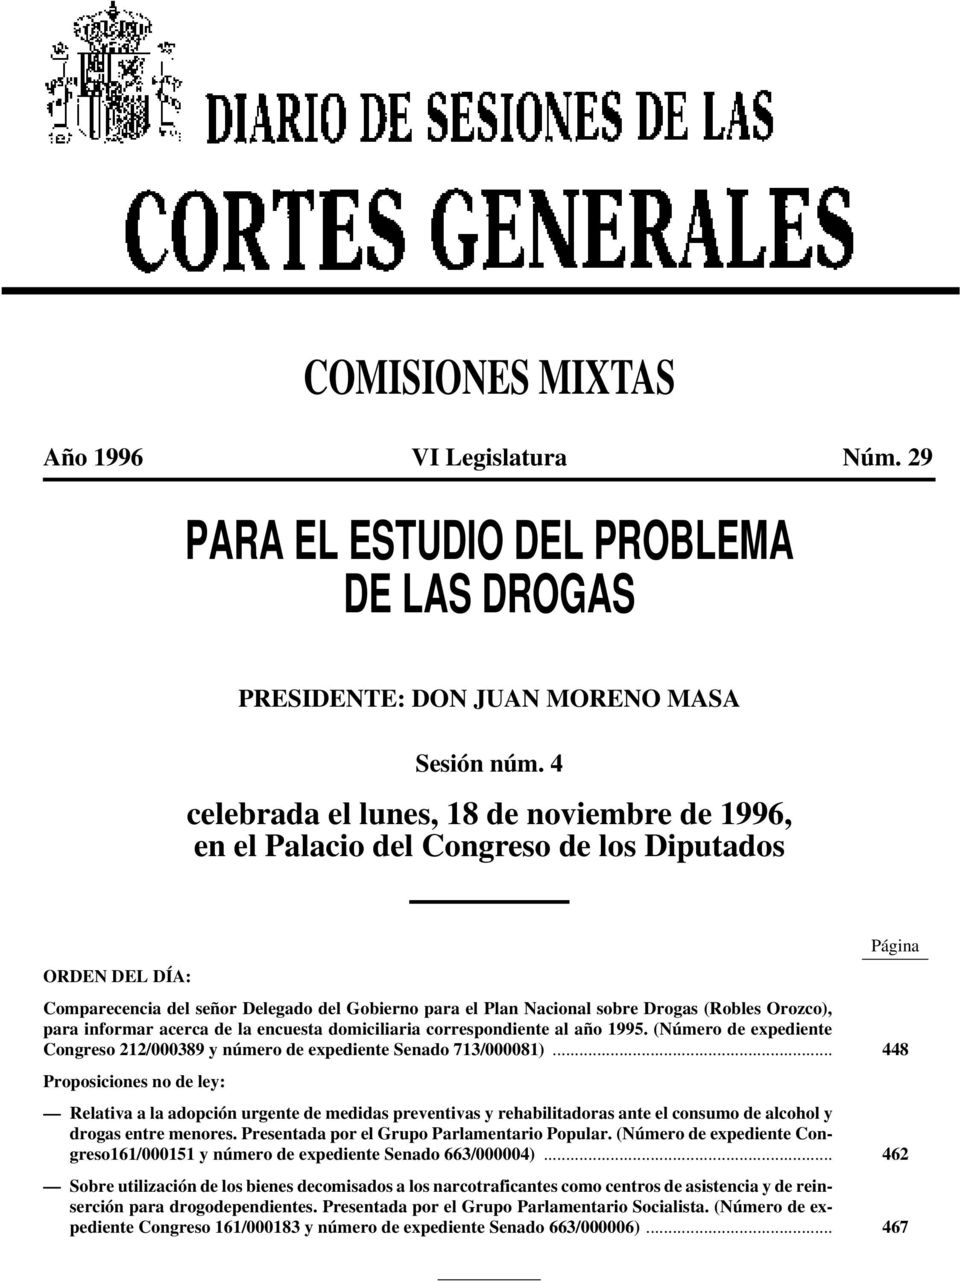 Orozco), para informar acerca de la encuesta domiciliaria correspondiente al año 1995. (Número de expediente Congreso 212/000389 y número de expediente Senado 713/000081).